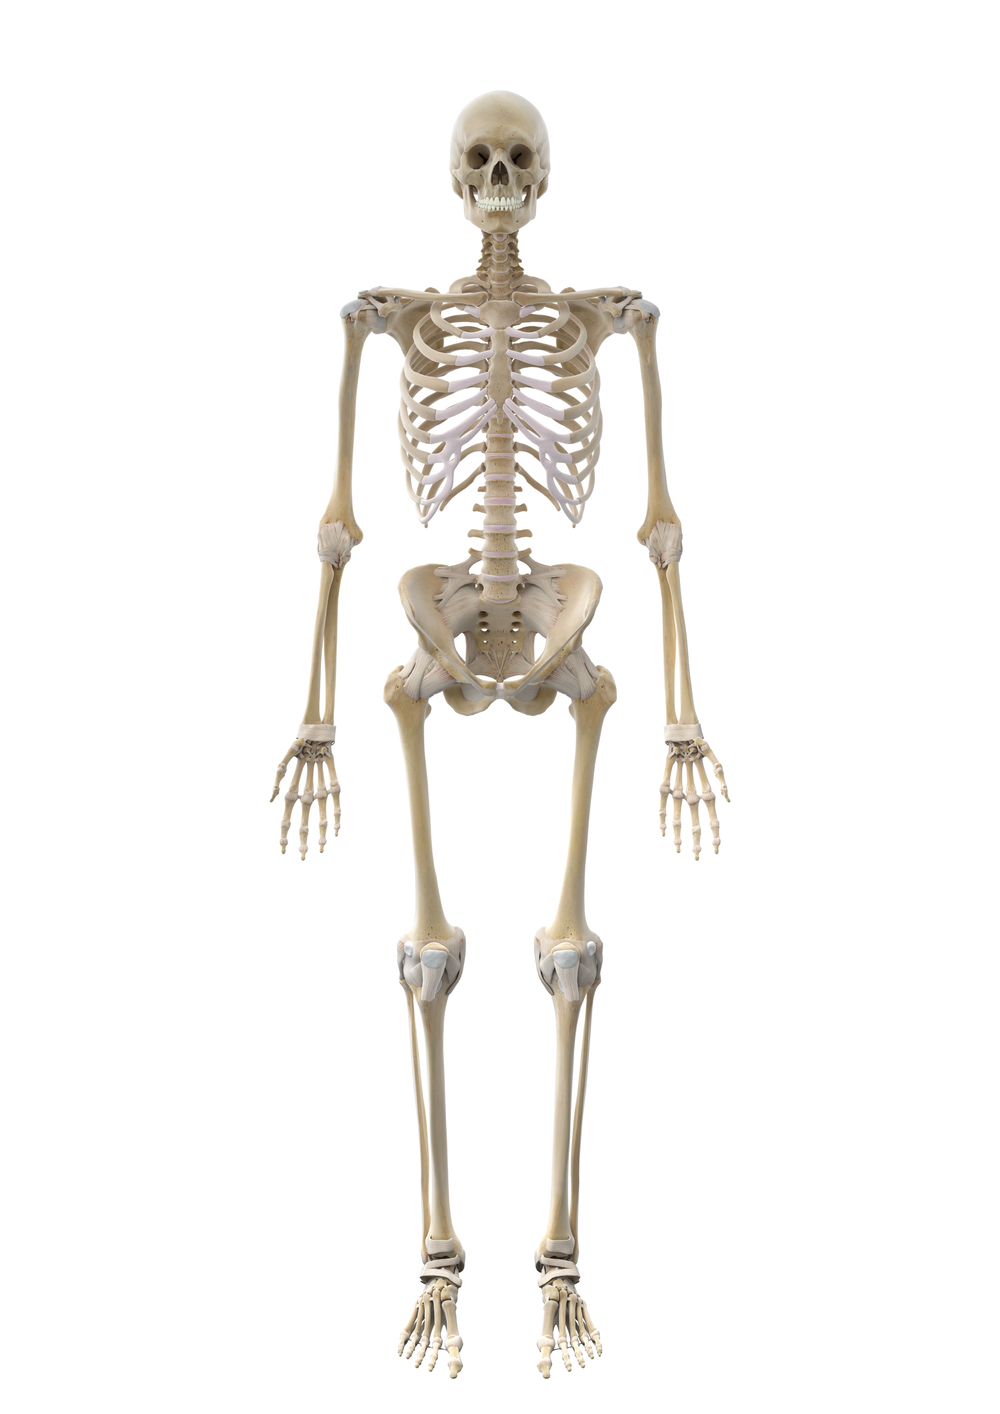 Die Knochen des Körpers in der Ansicht von vorn